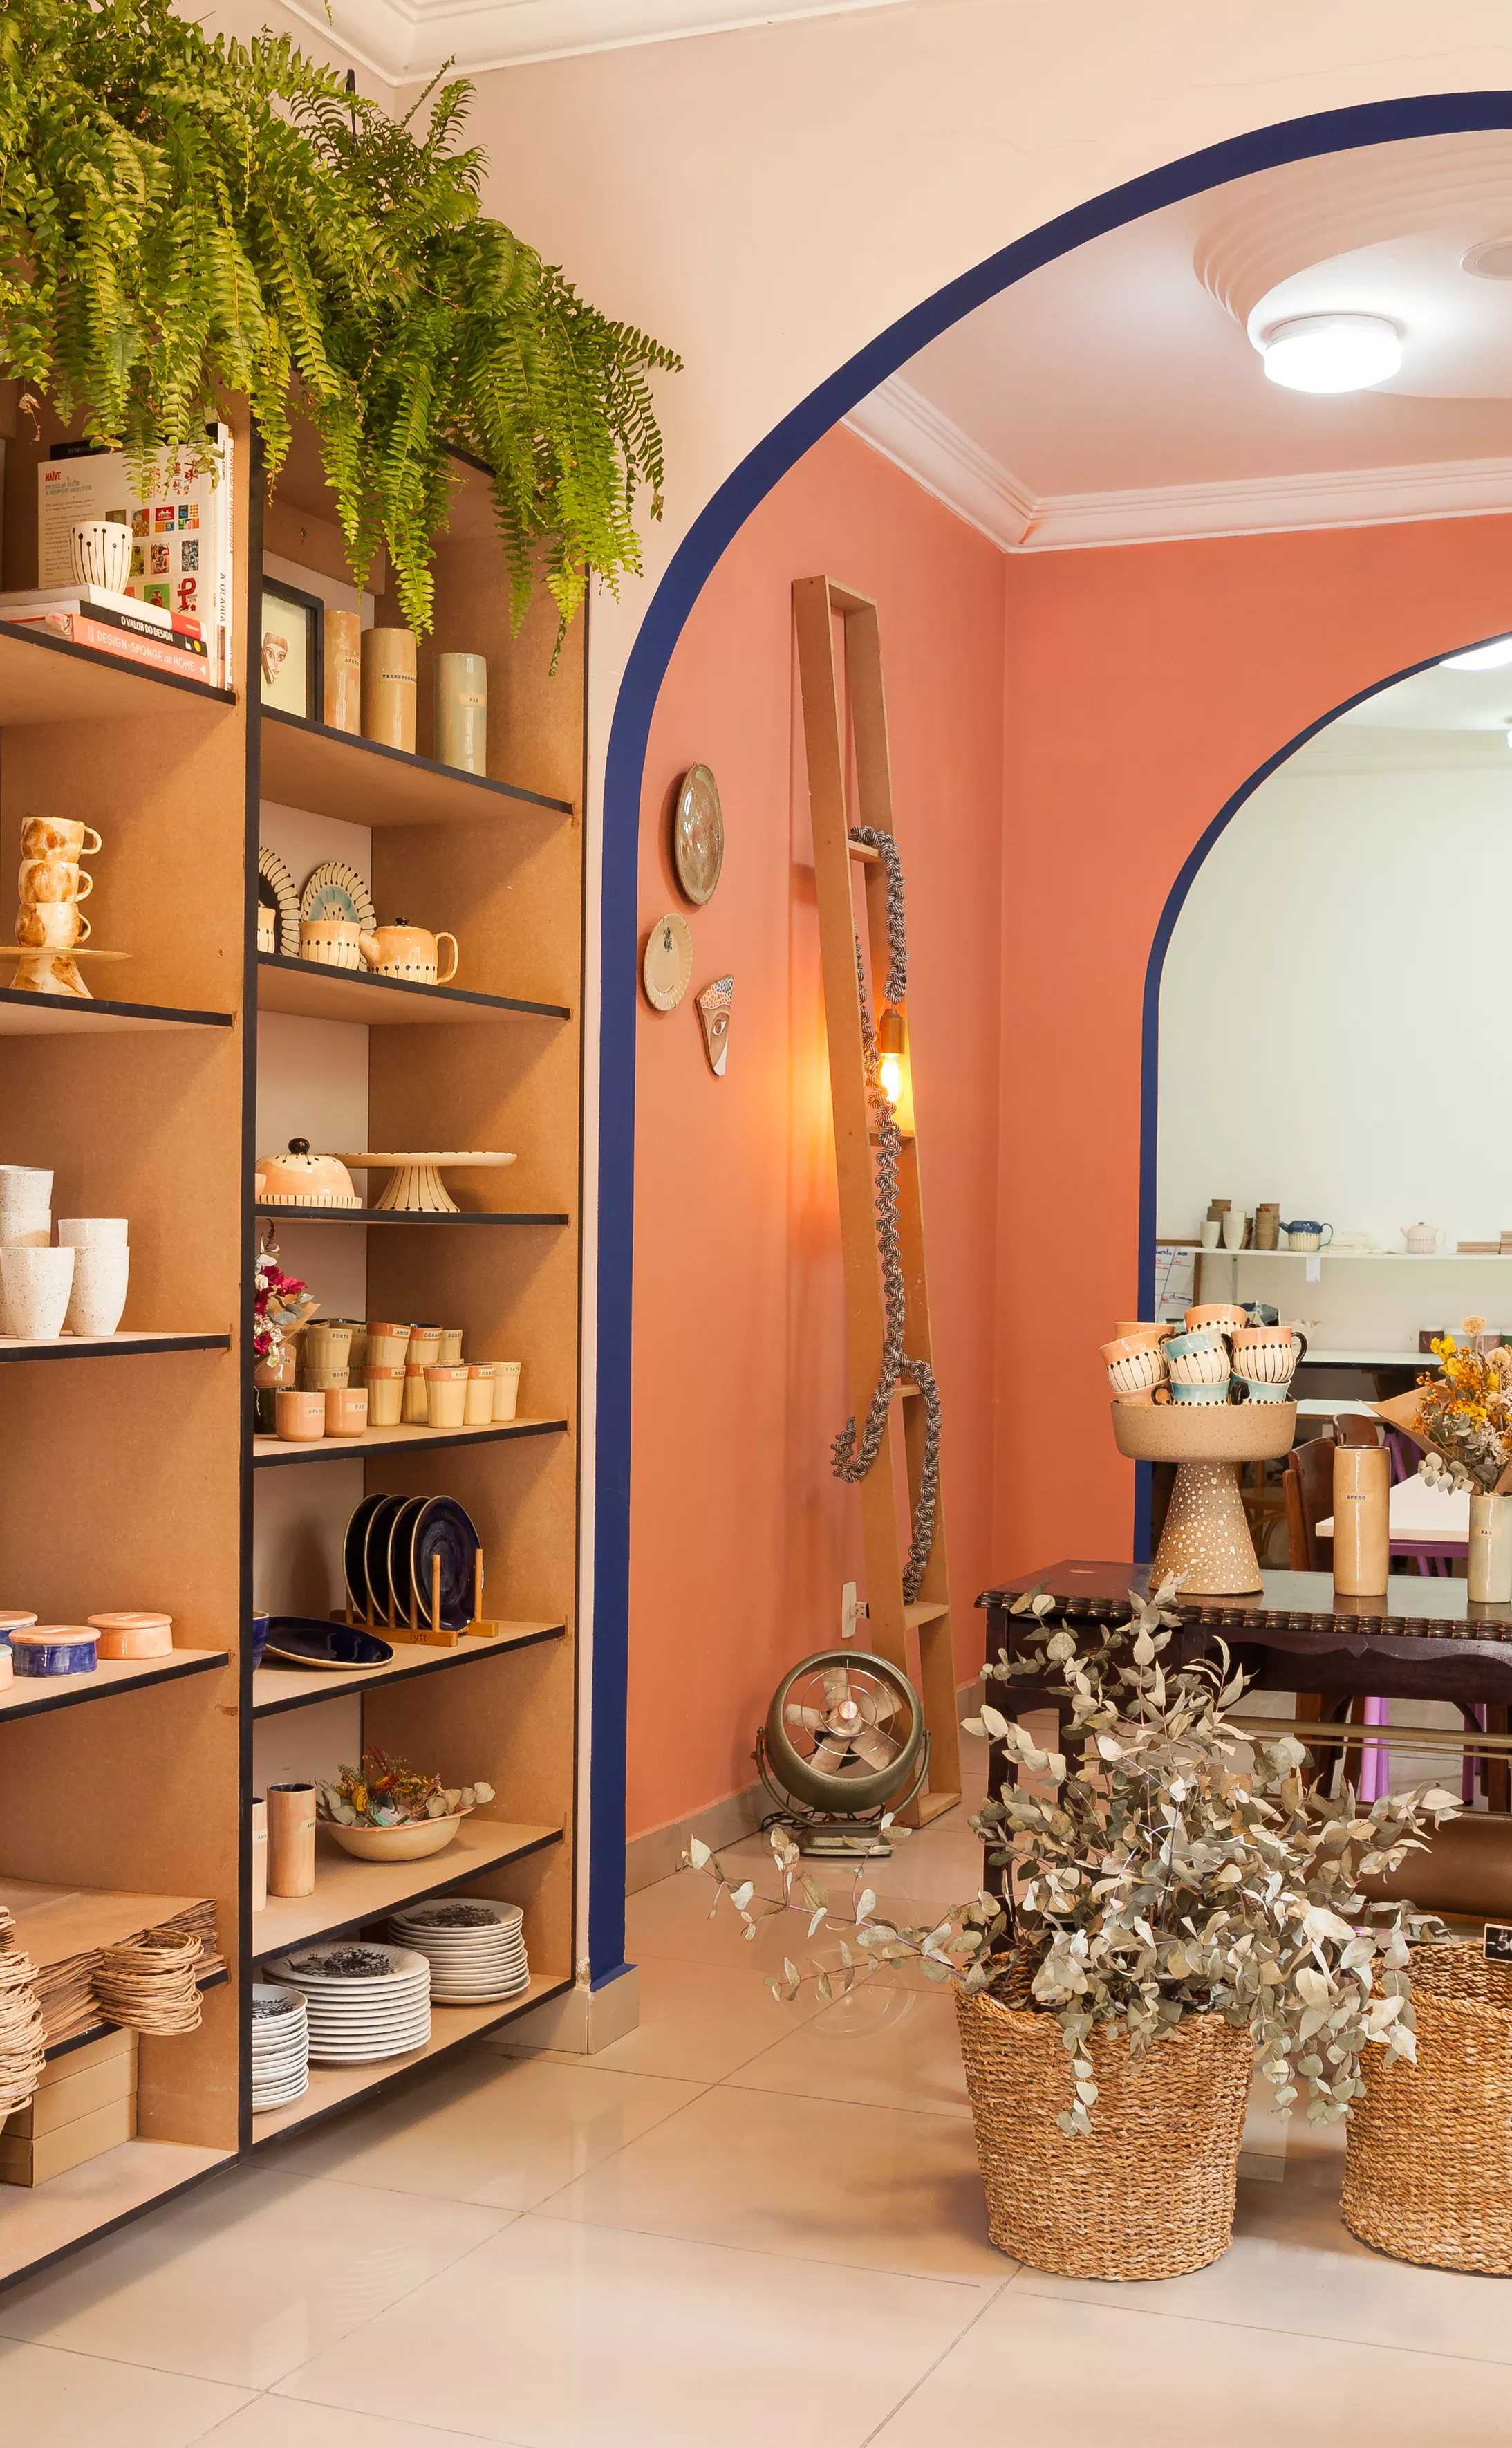 Interior da loja Atelier Thaís Mor. Lugar amplo com produtos expostos em mostruários e estantes.